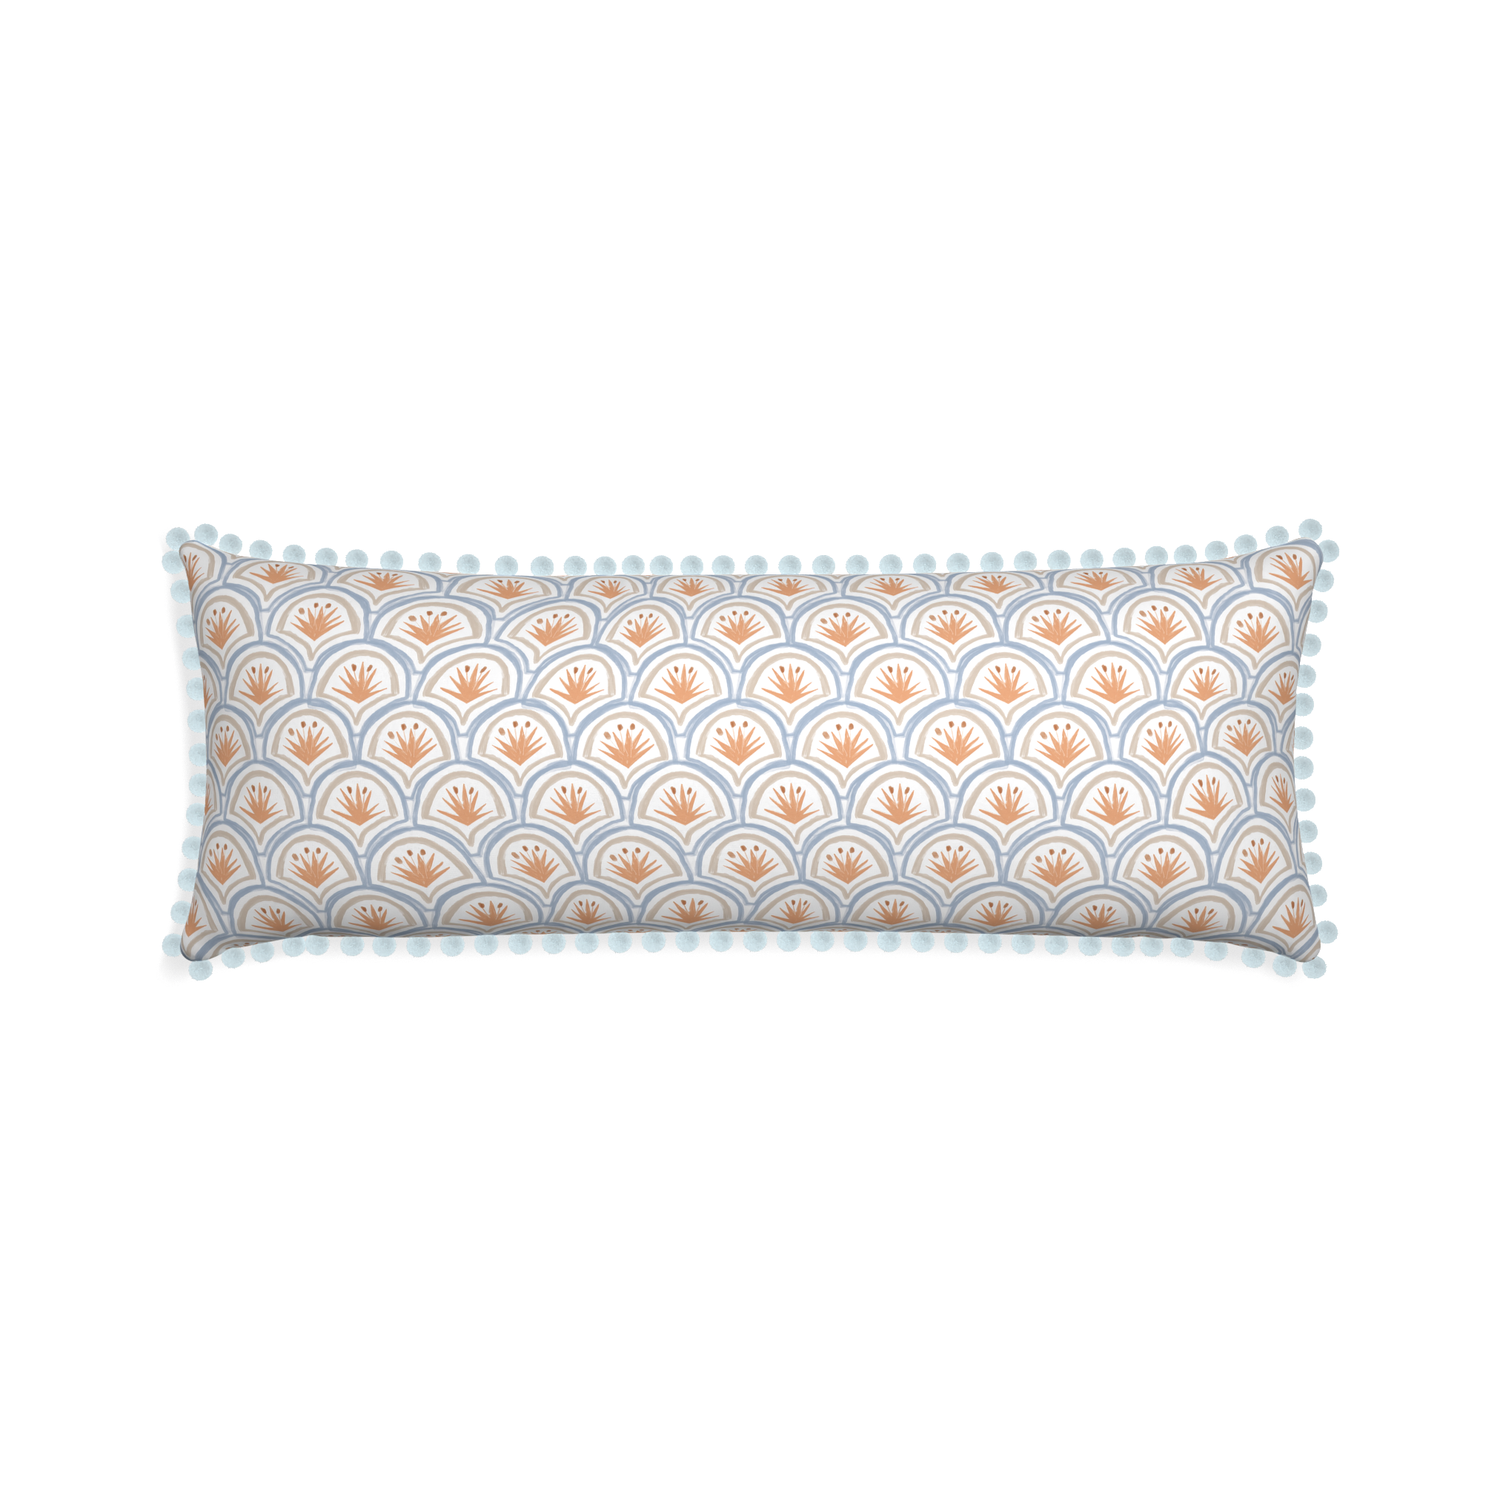 Xl-lumbar thatcher apricot custom pillow with powder pom pom on white background